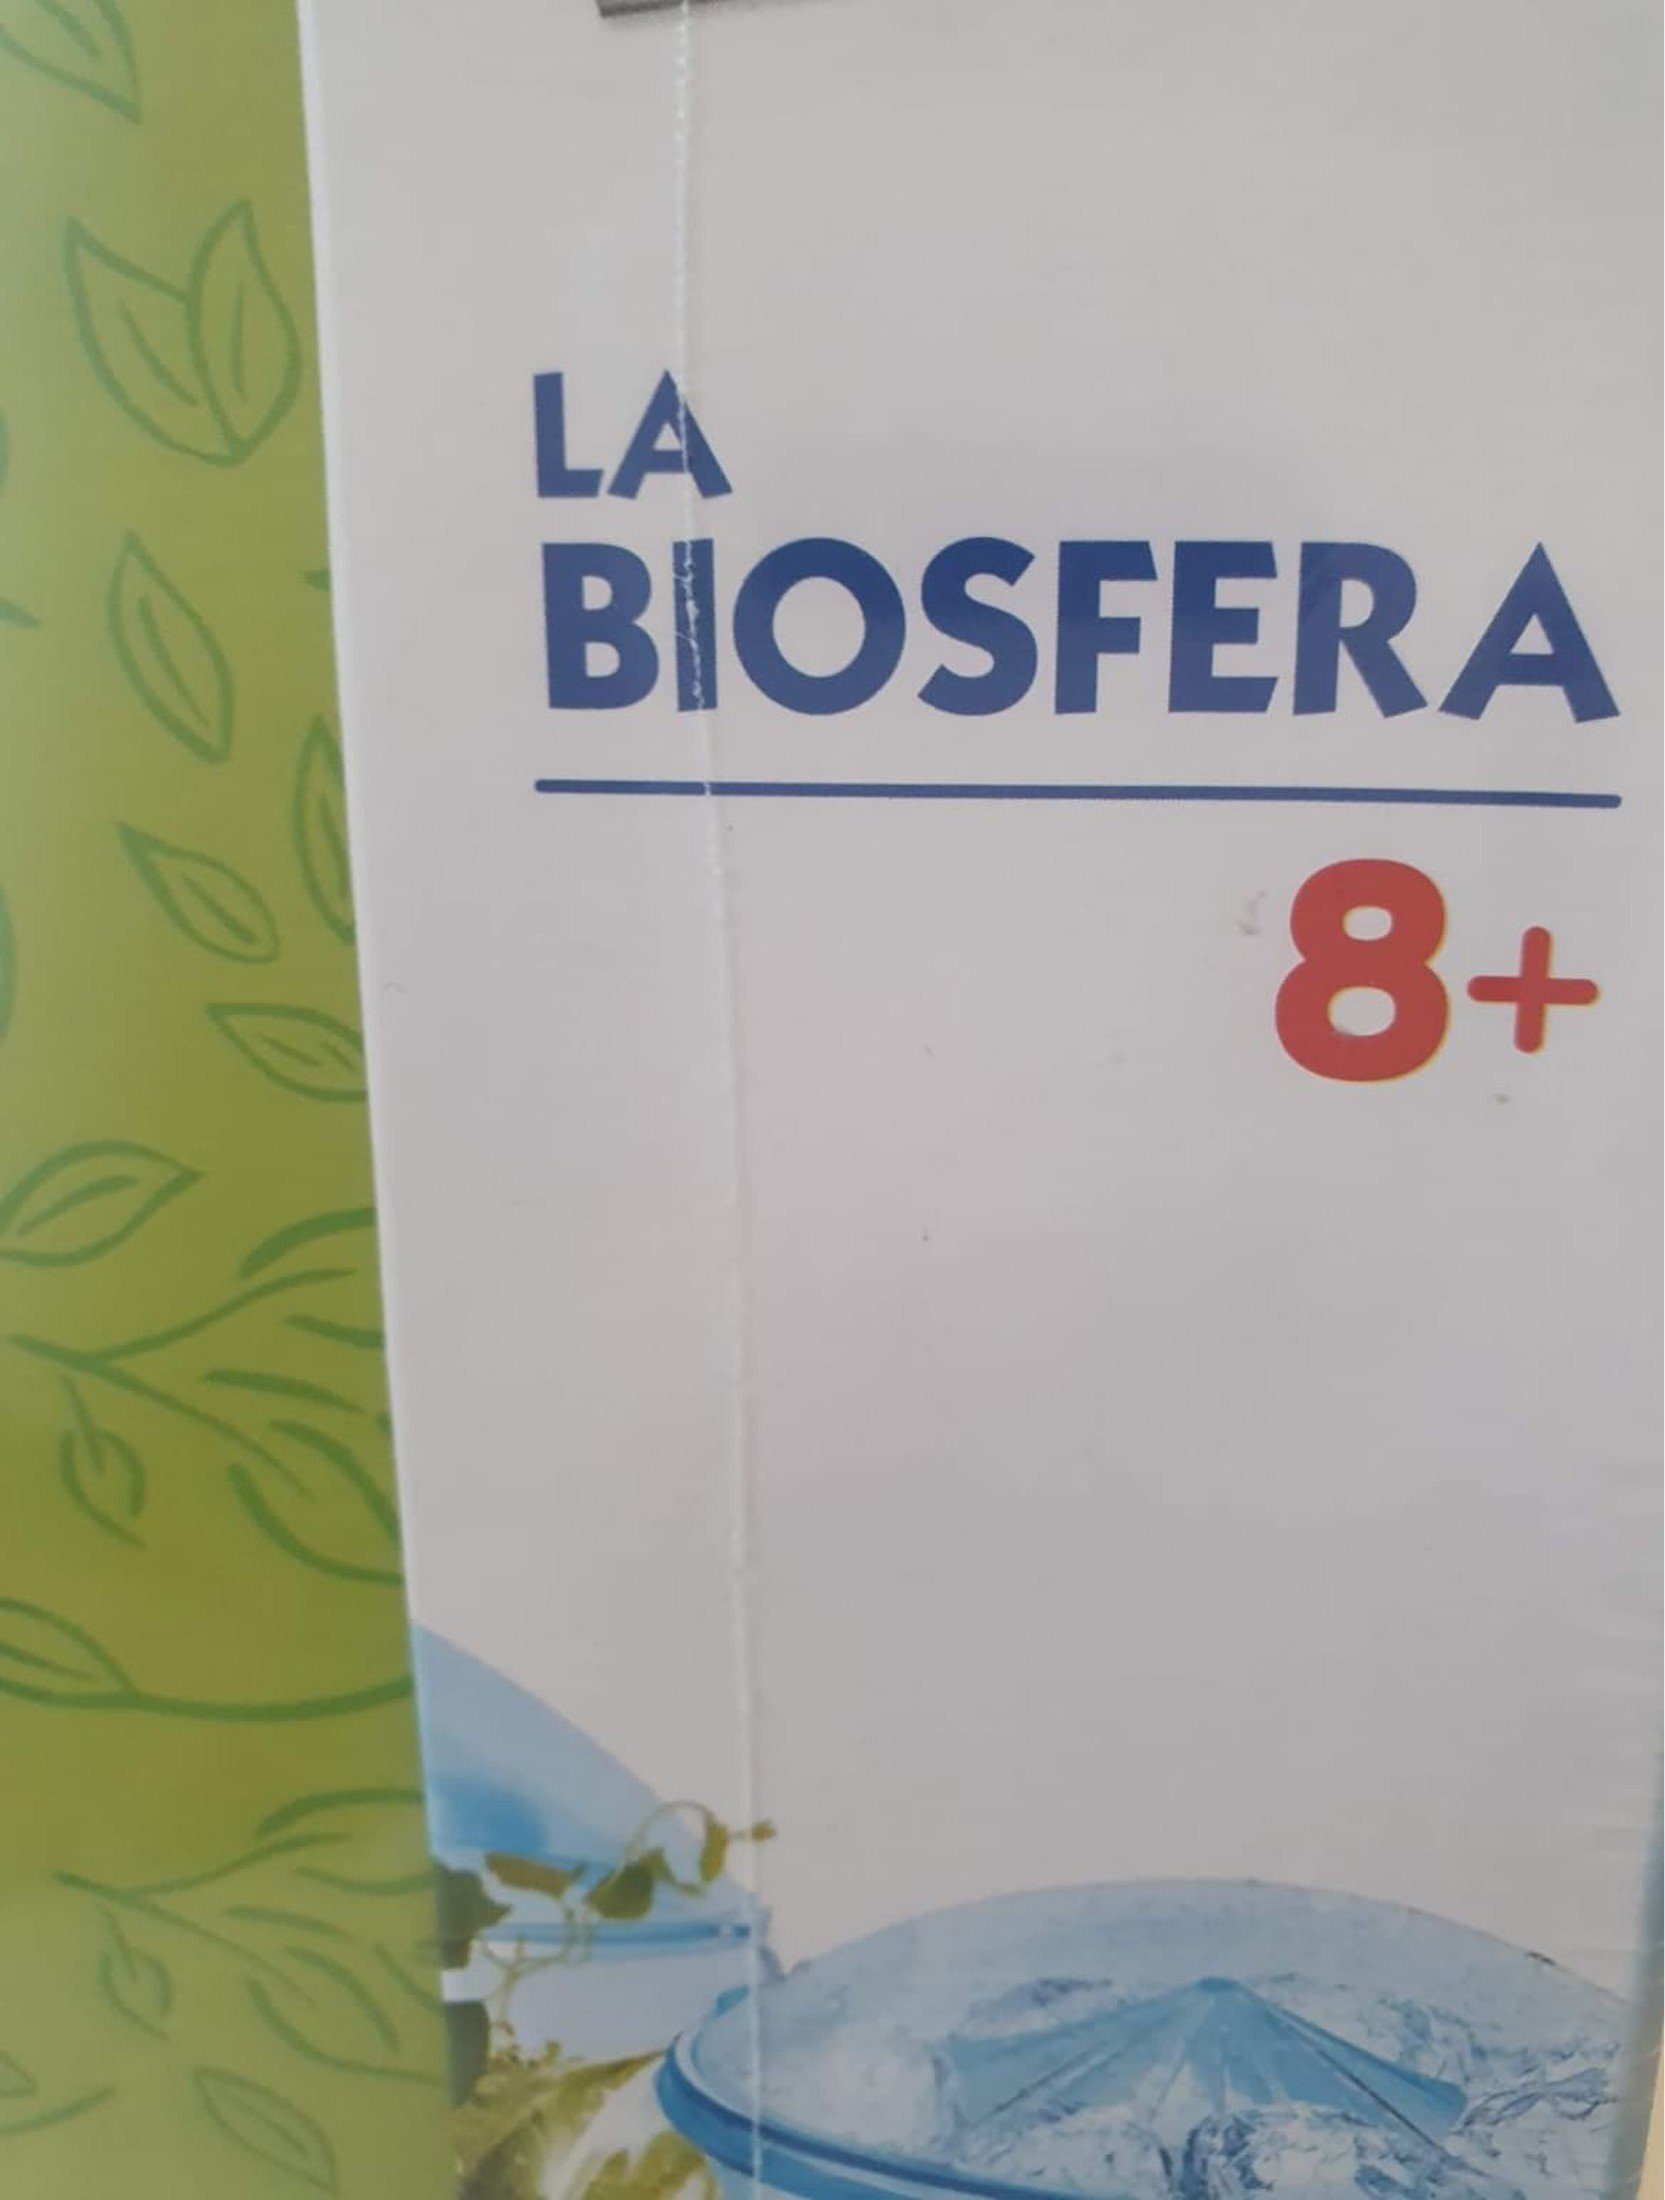 LA BIOSFERA SCIENZA e GIOCO New with Tags, 8+ Yrs Clementoni  (6743070605497)